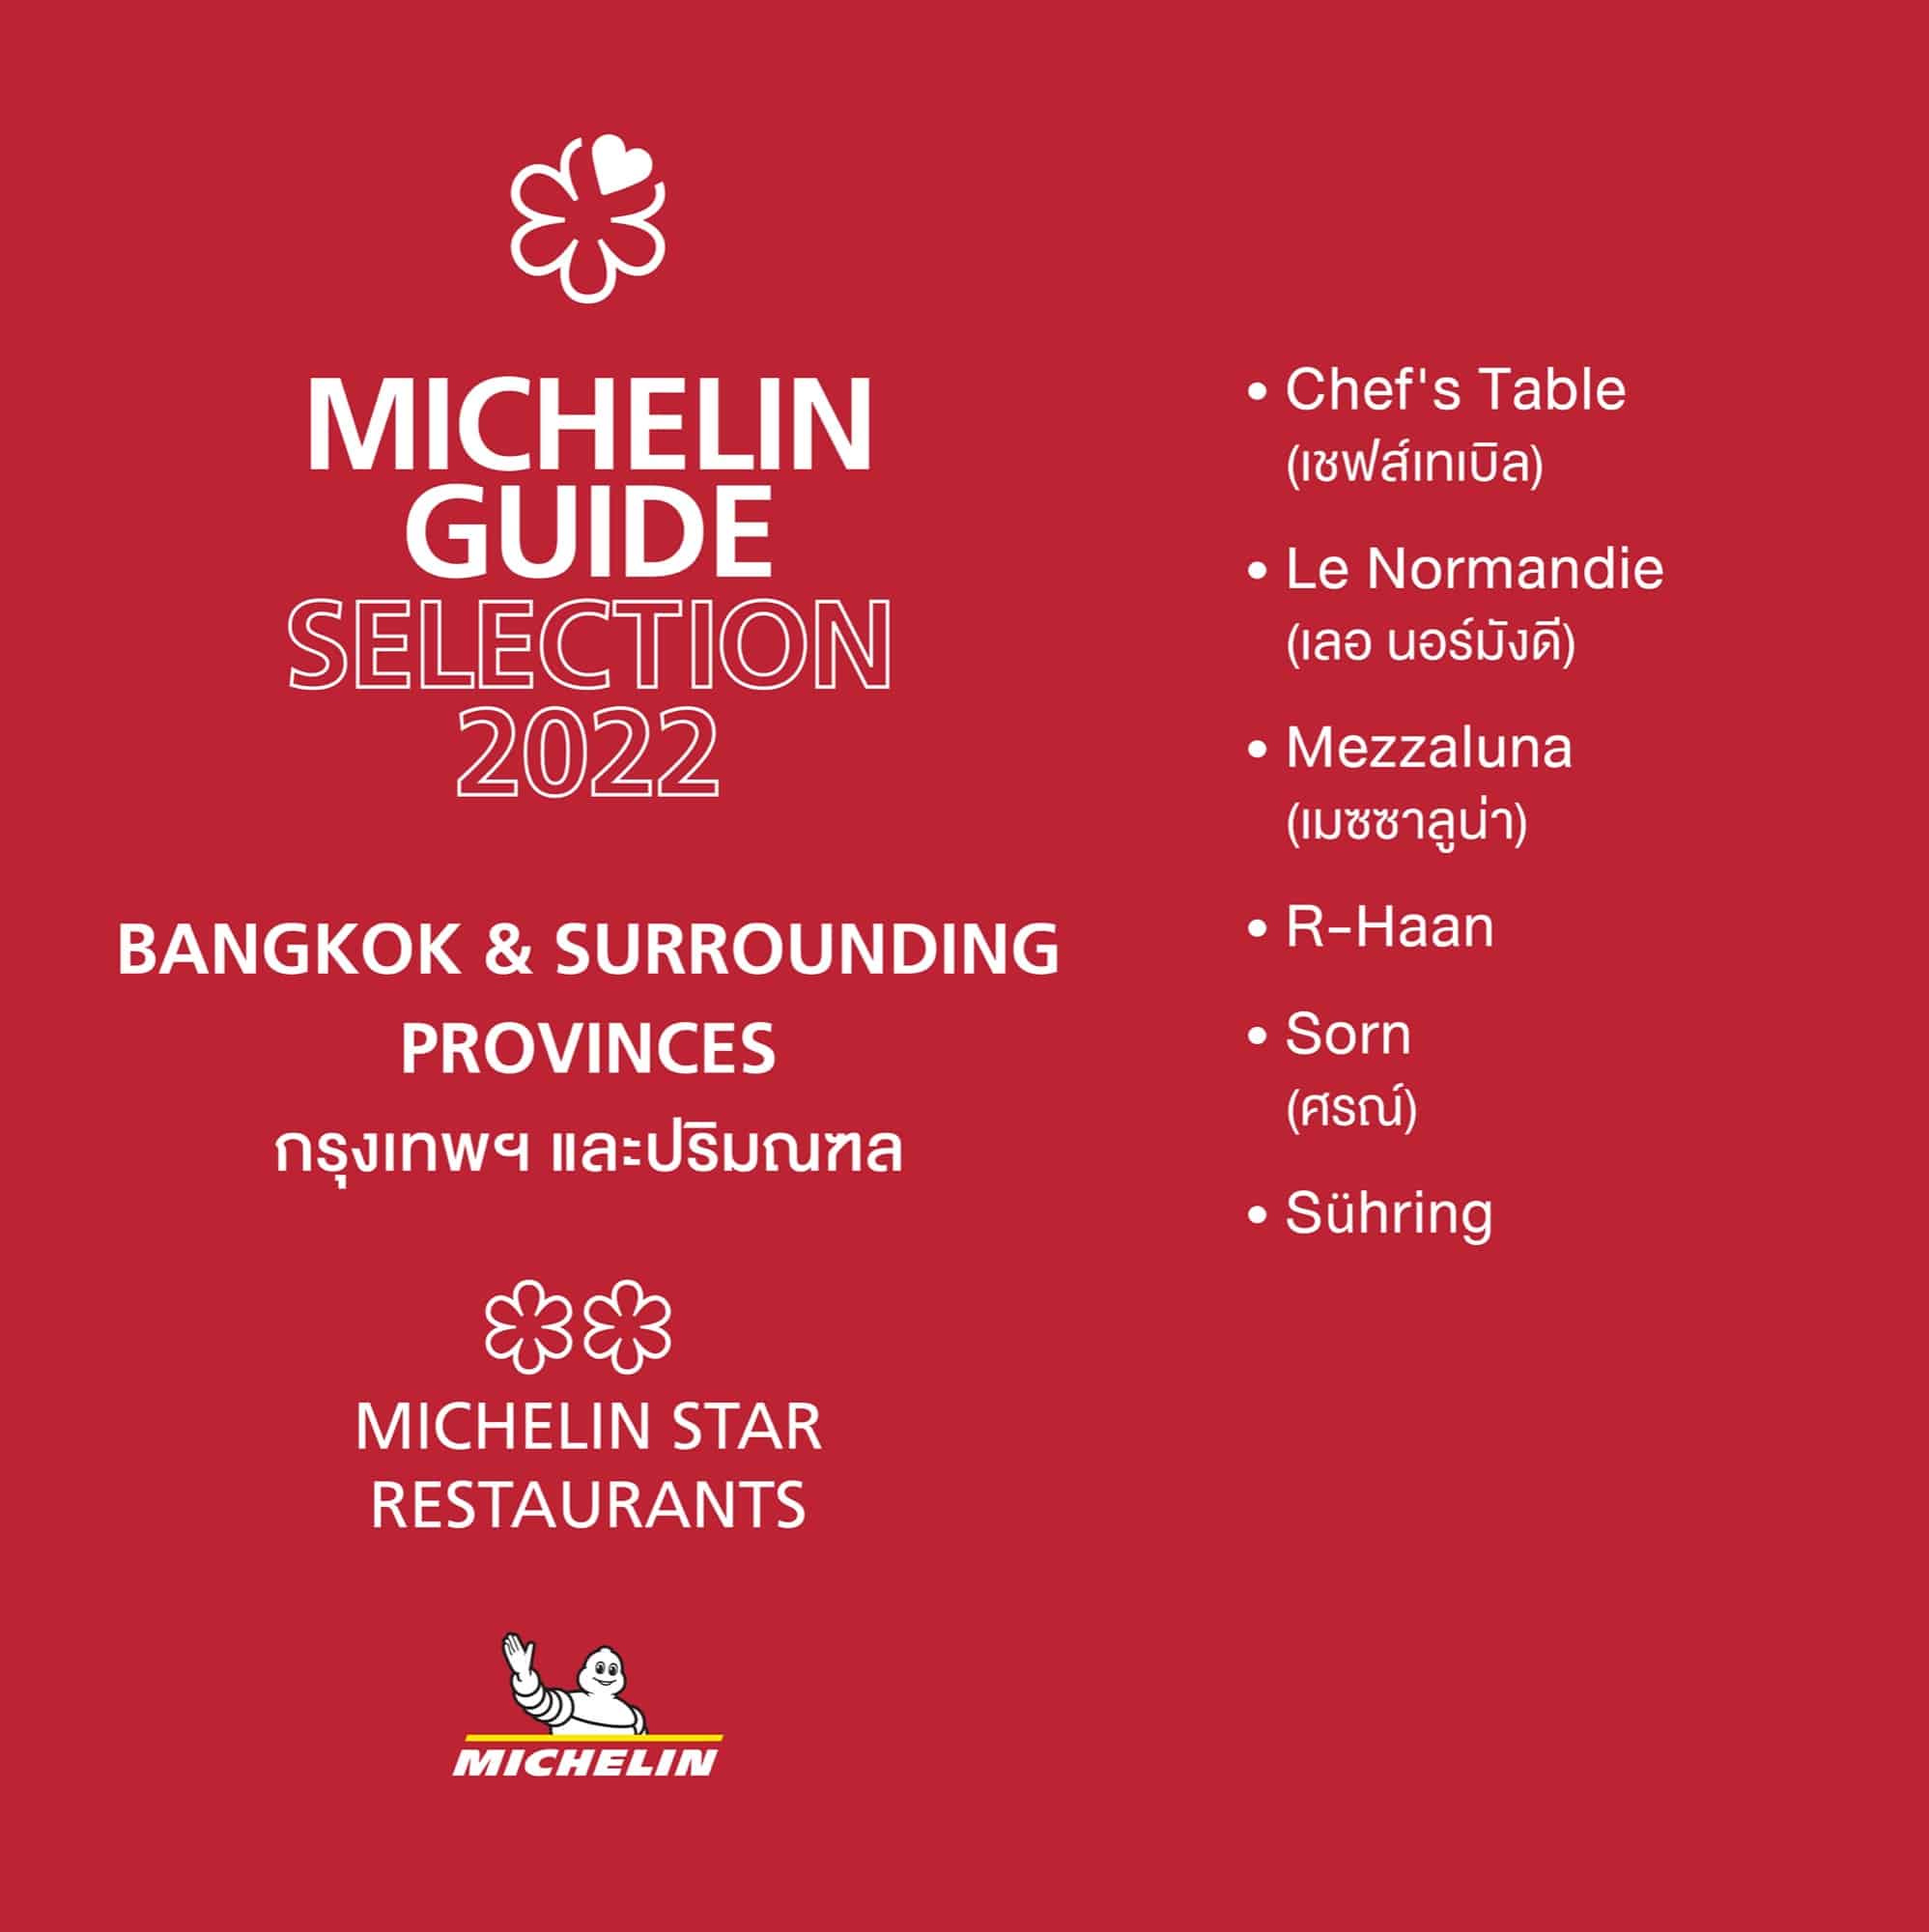 เปิดตัวคู่มือ "มิชลิน ไกด์" ฉบับประเทศไทย ประจำปี 2565 ครั้งแรกที่มีร้านติดอันดับ "1 ดาวมิชลิน" ถึง 6 ร้าน 5